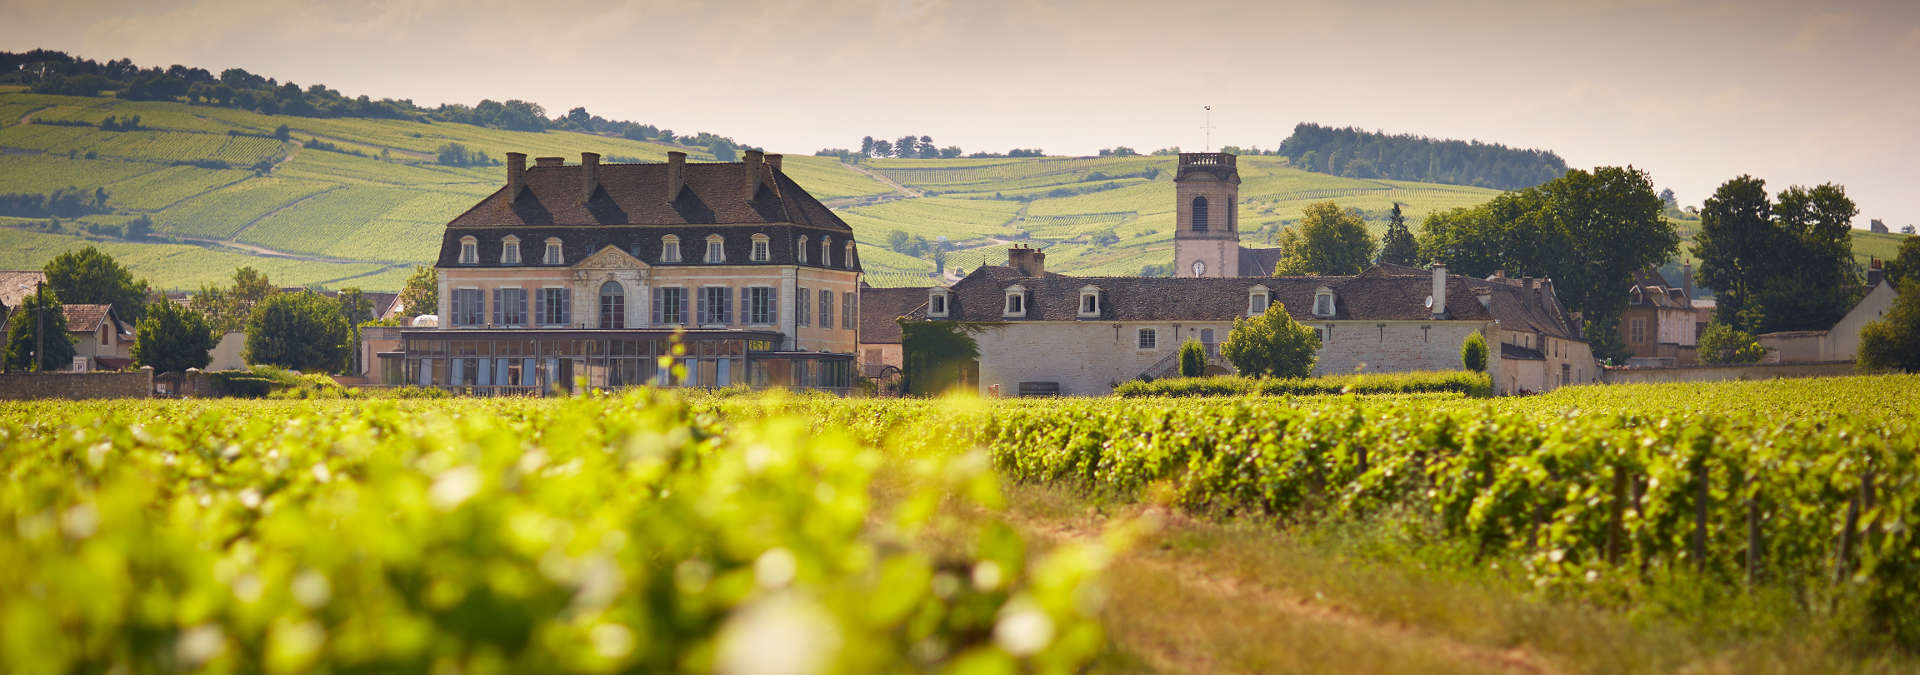 波玛酒庄(chateau de pommard)位于法国勃艮第(burgundy)产区波玛镇